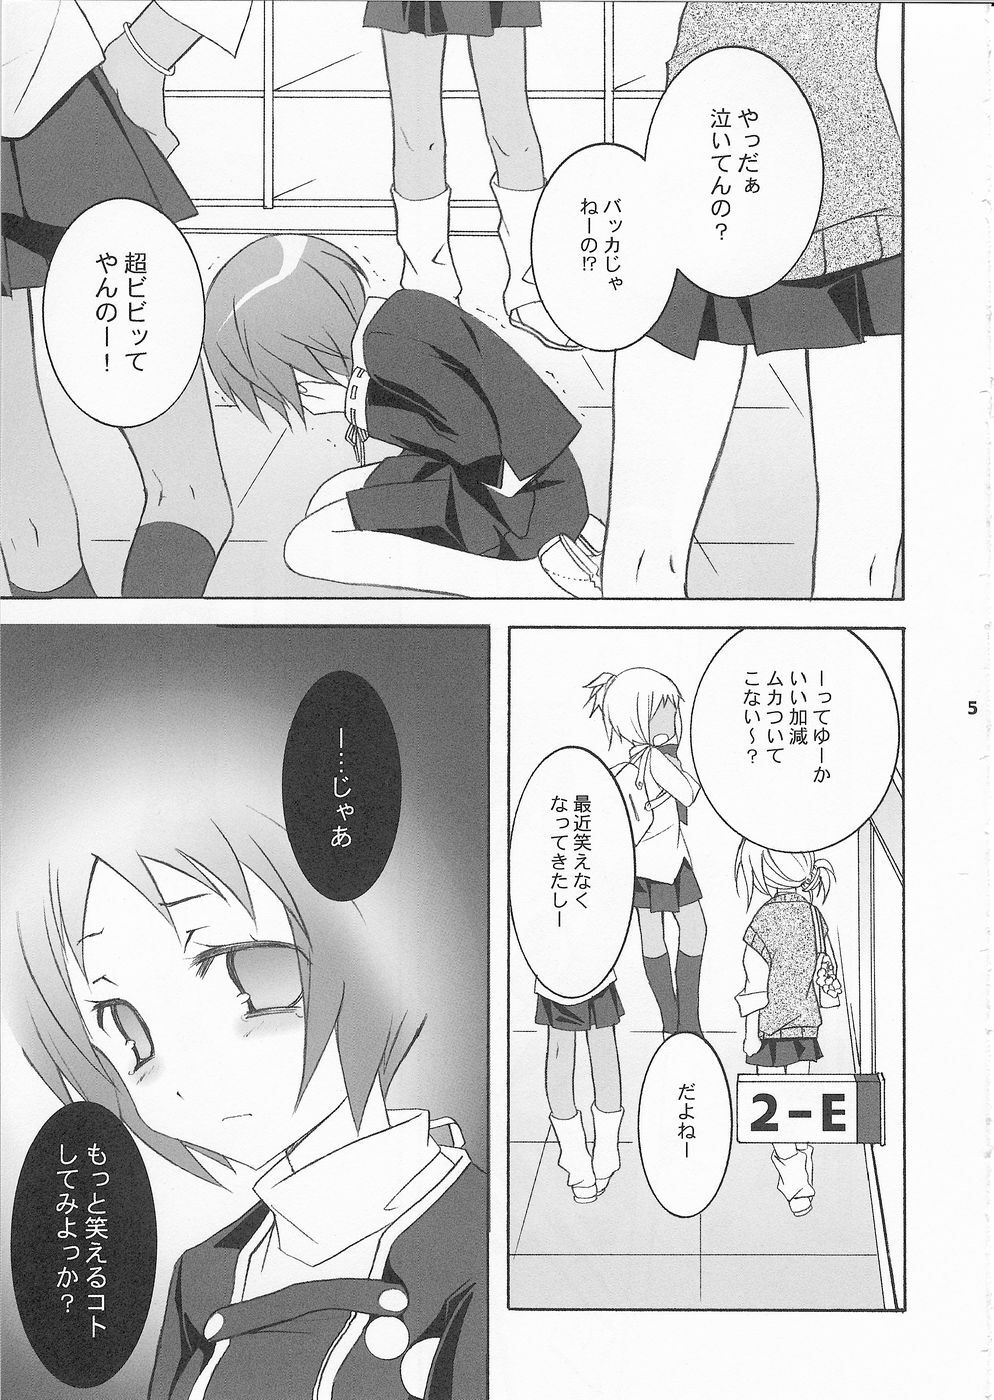 (SC33) [Tenjikuya (Mochizuki Nana)] 3P (Persona 3) page 4 full